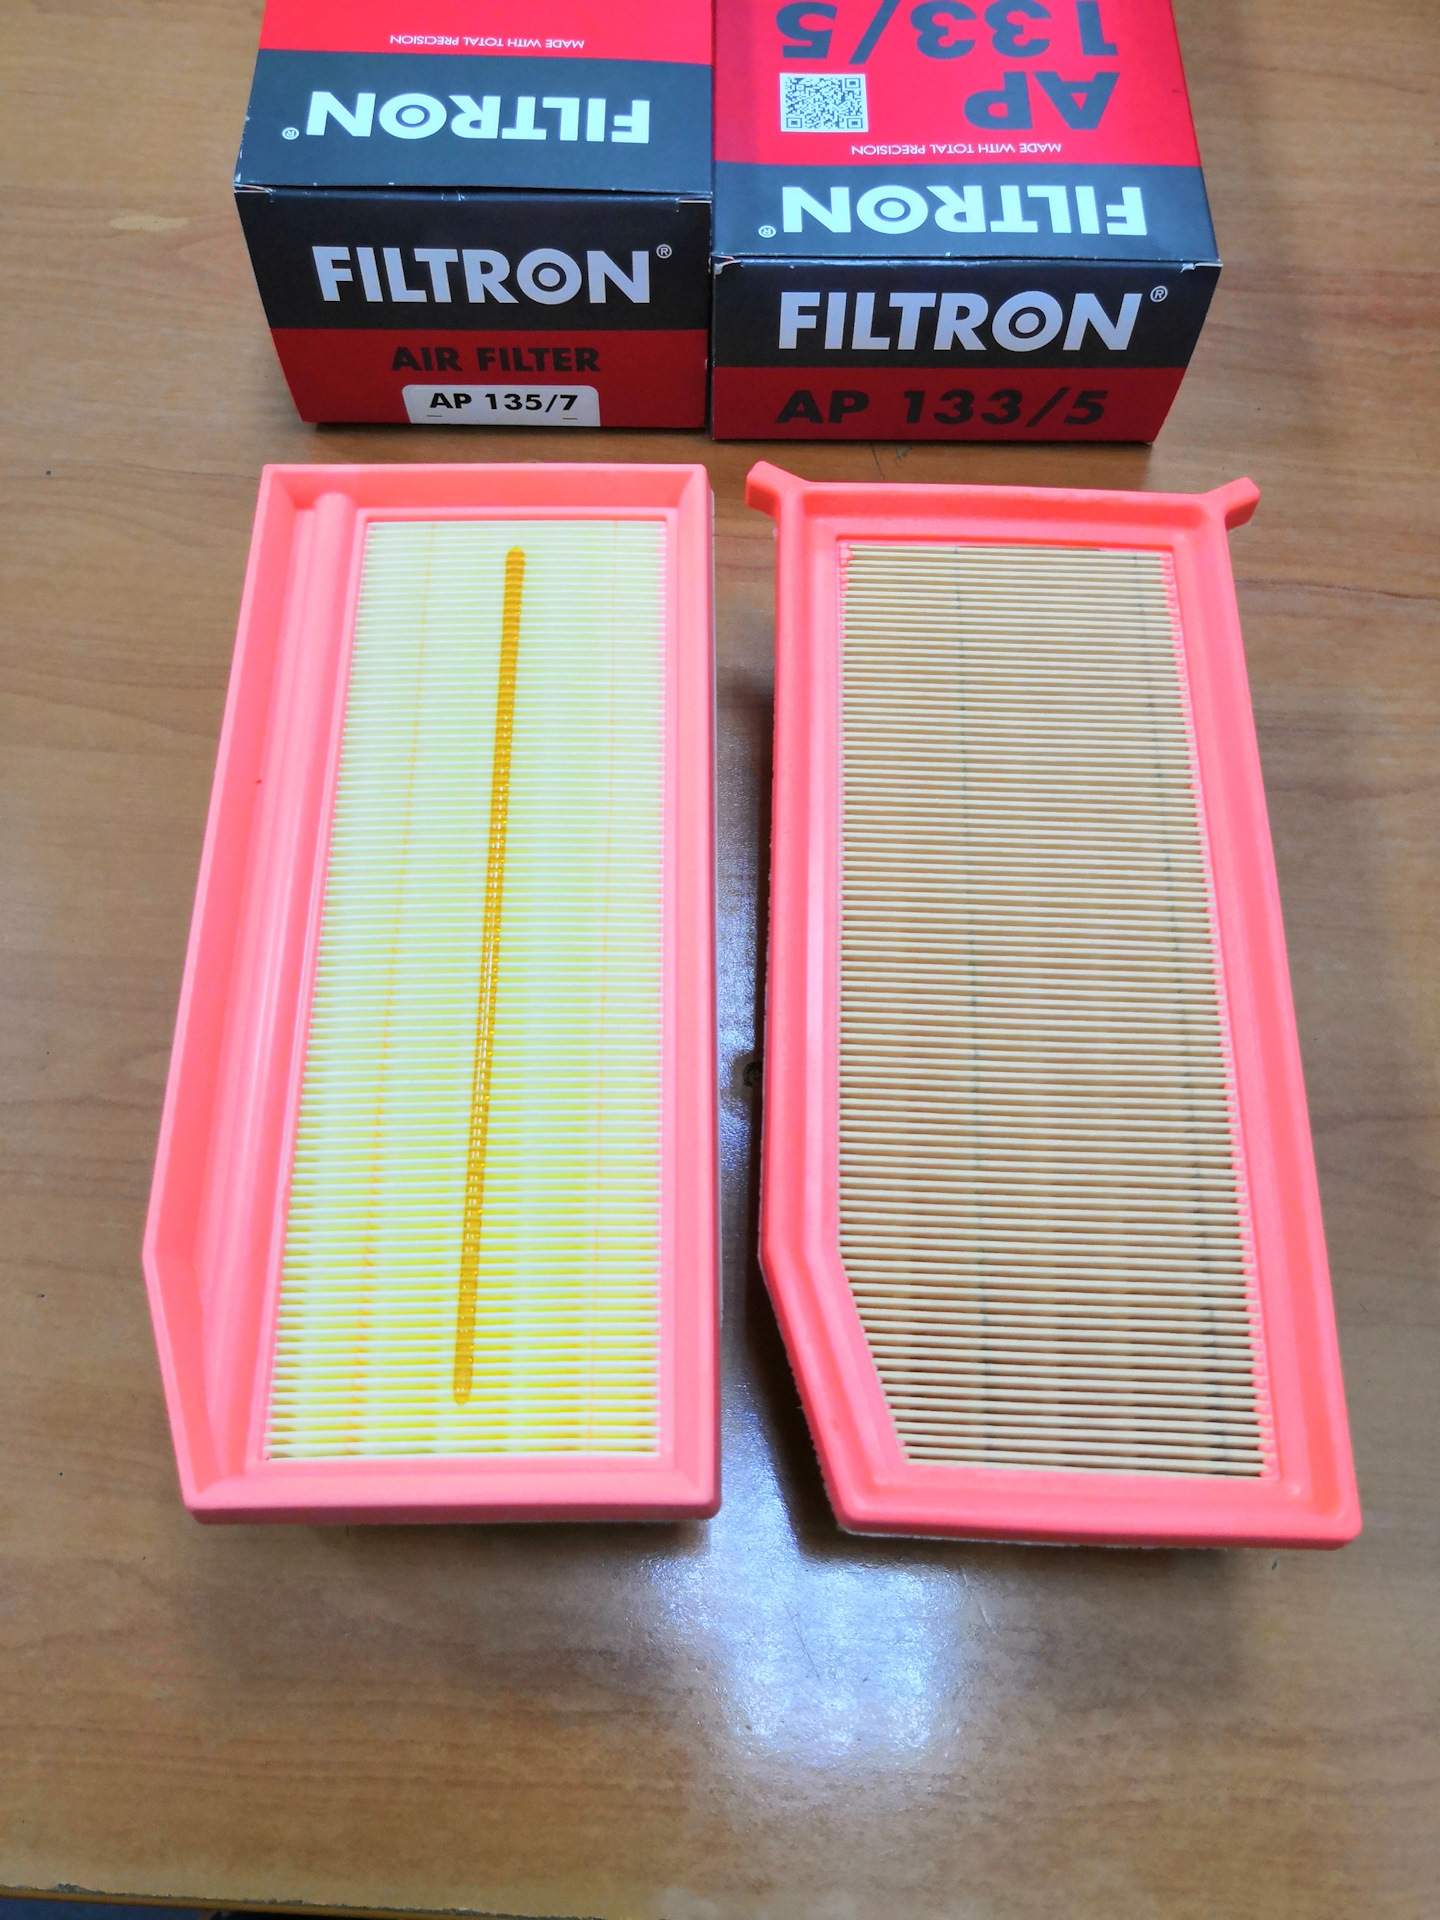 Фильтр воздушный рено каптур 1.6. Фильтр FILTRON ap135/7. Фильтр воздушный Фильтрон 133/5. FILTRON AP 135/7 фильтр воздушный.